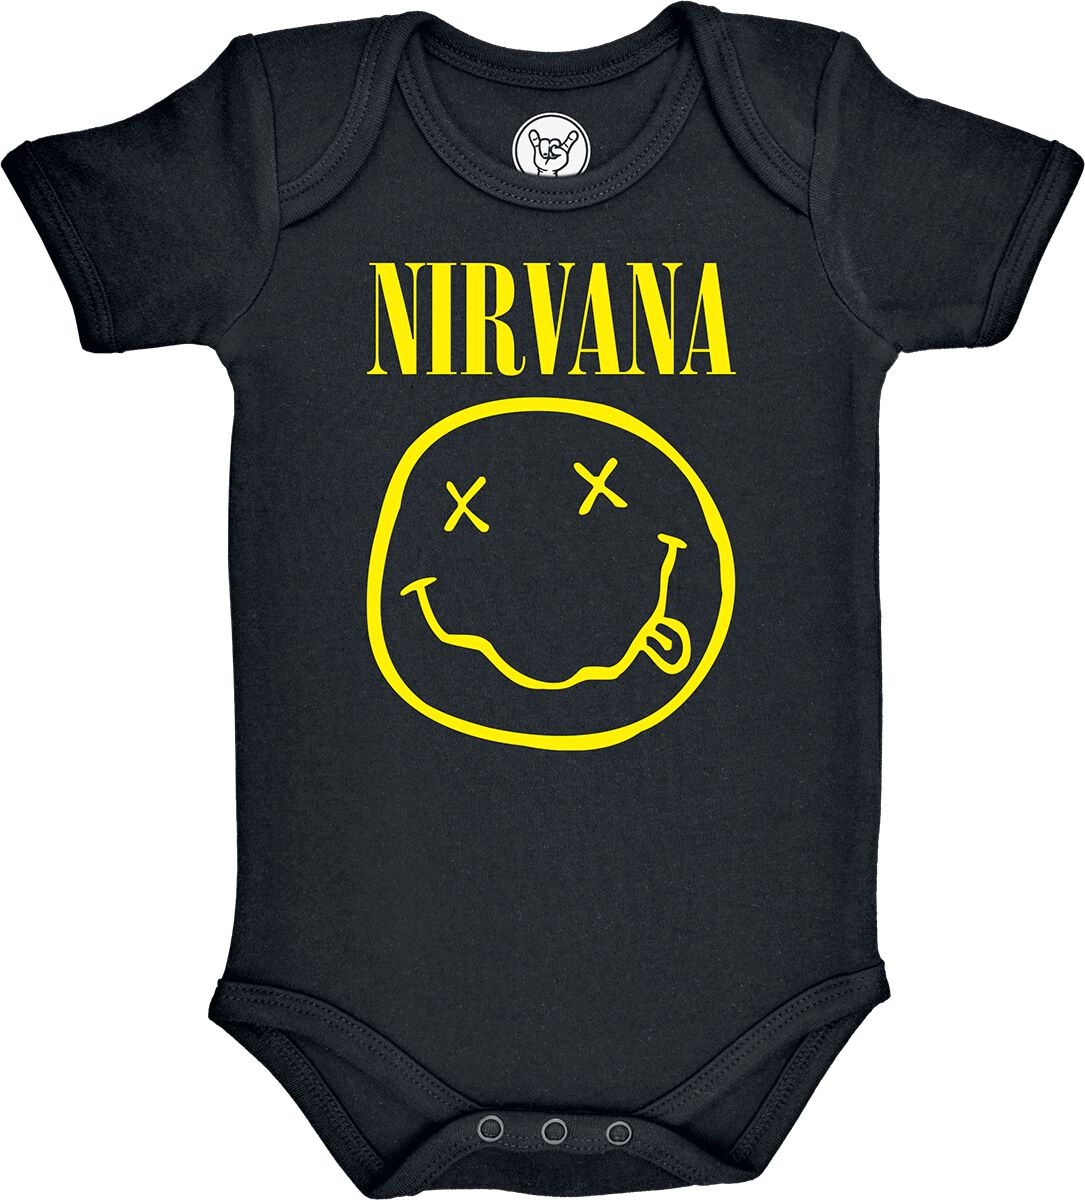 Nirvana Body für Neugeborene - Metal-Kids - Smiley - für Mädchen & Jungen - schwarz  - Lizenziertes Merchandise!